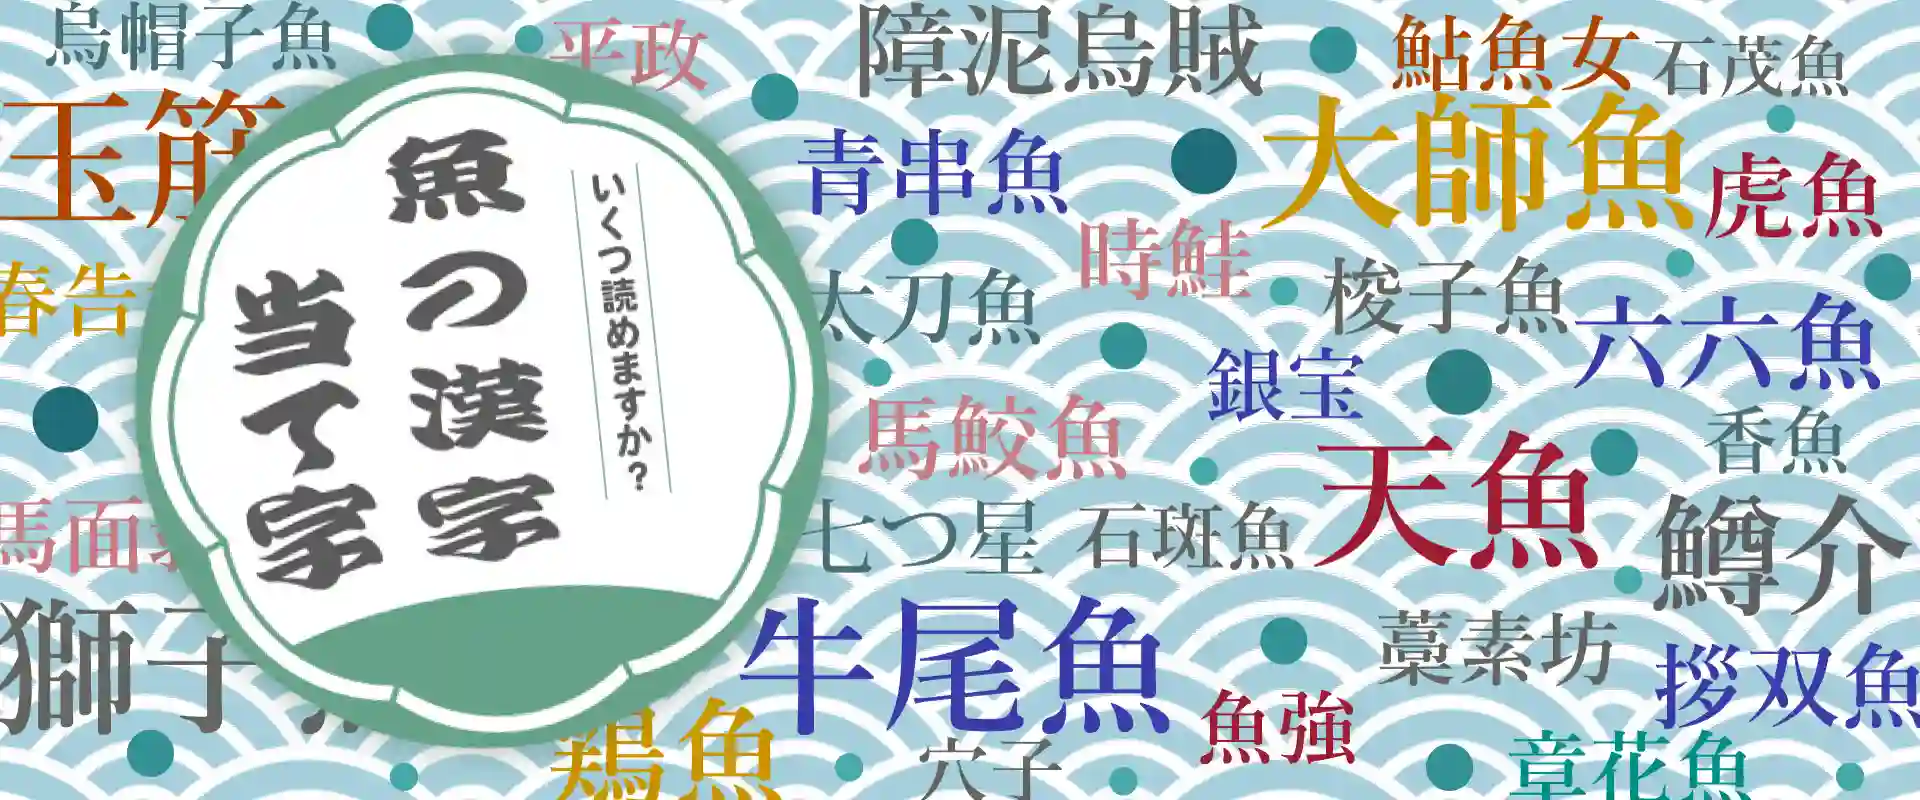 魚へんの漢字・魚の漢字一覧表のイメージ